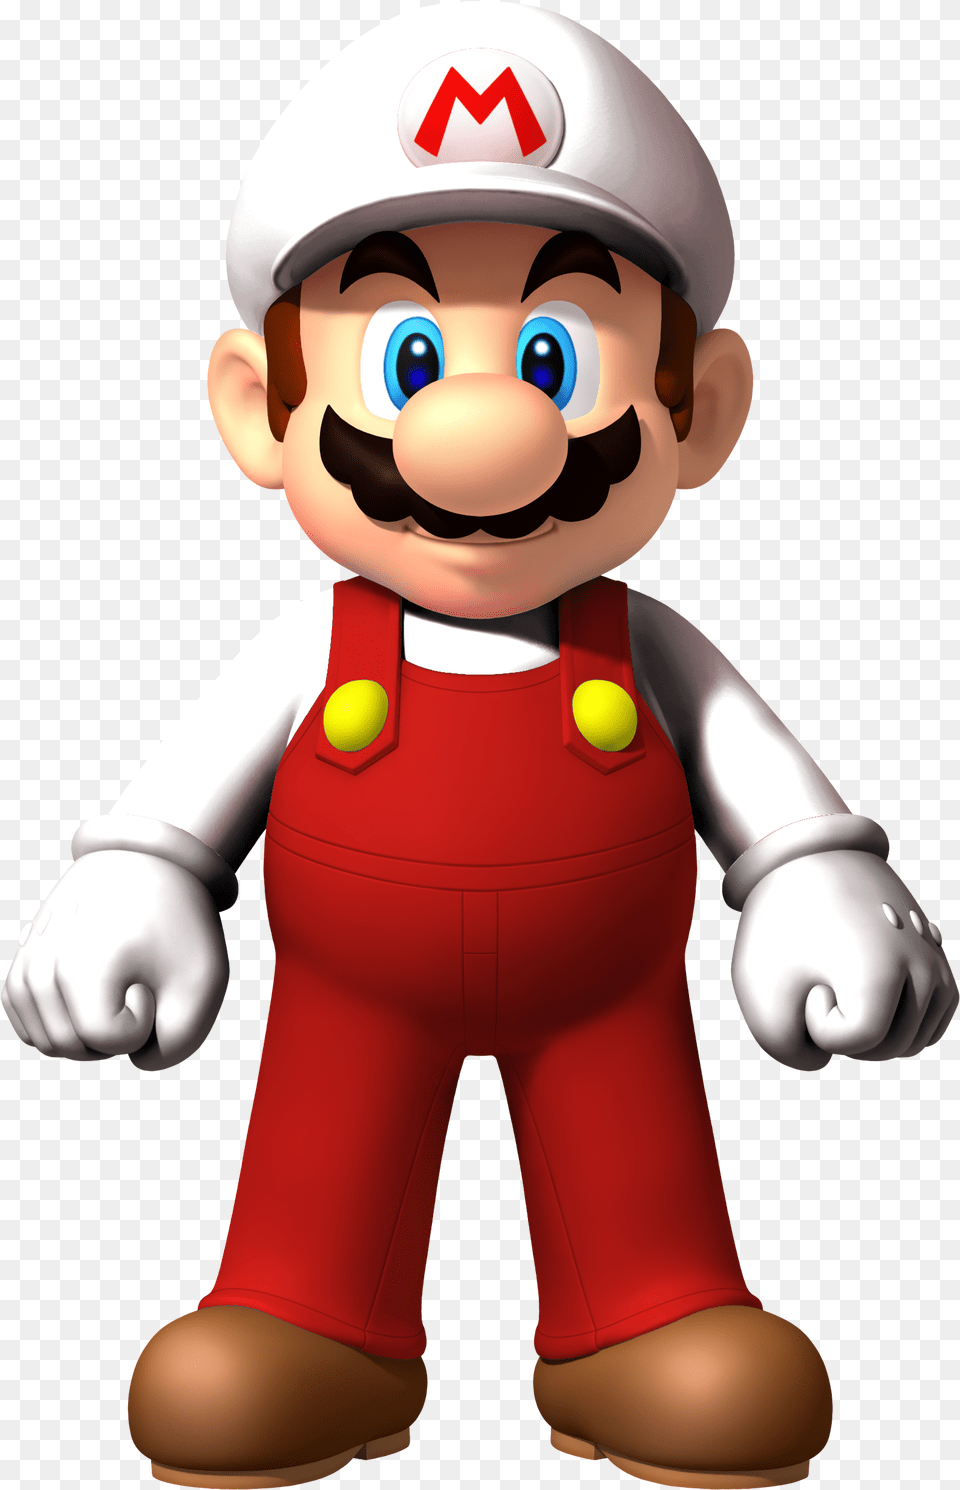 Fire Mario Super Bros New Super Mario Bros Wii Mario, Baby, Person, Face, Head Png Image